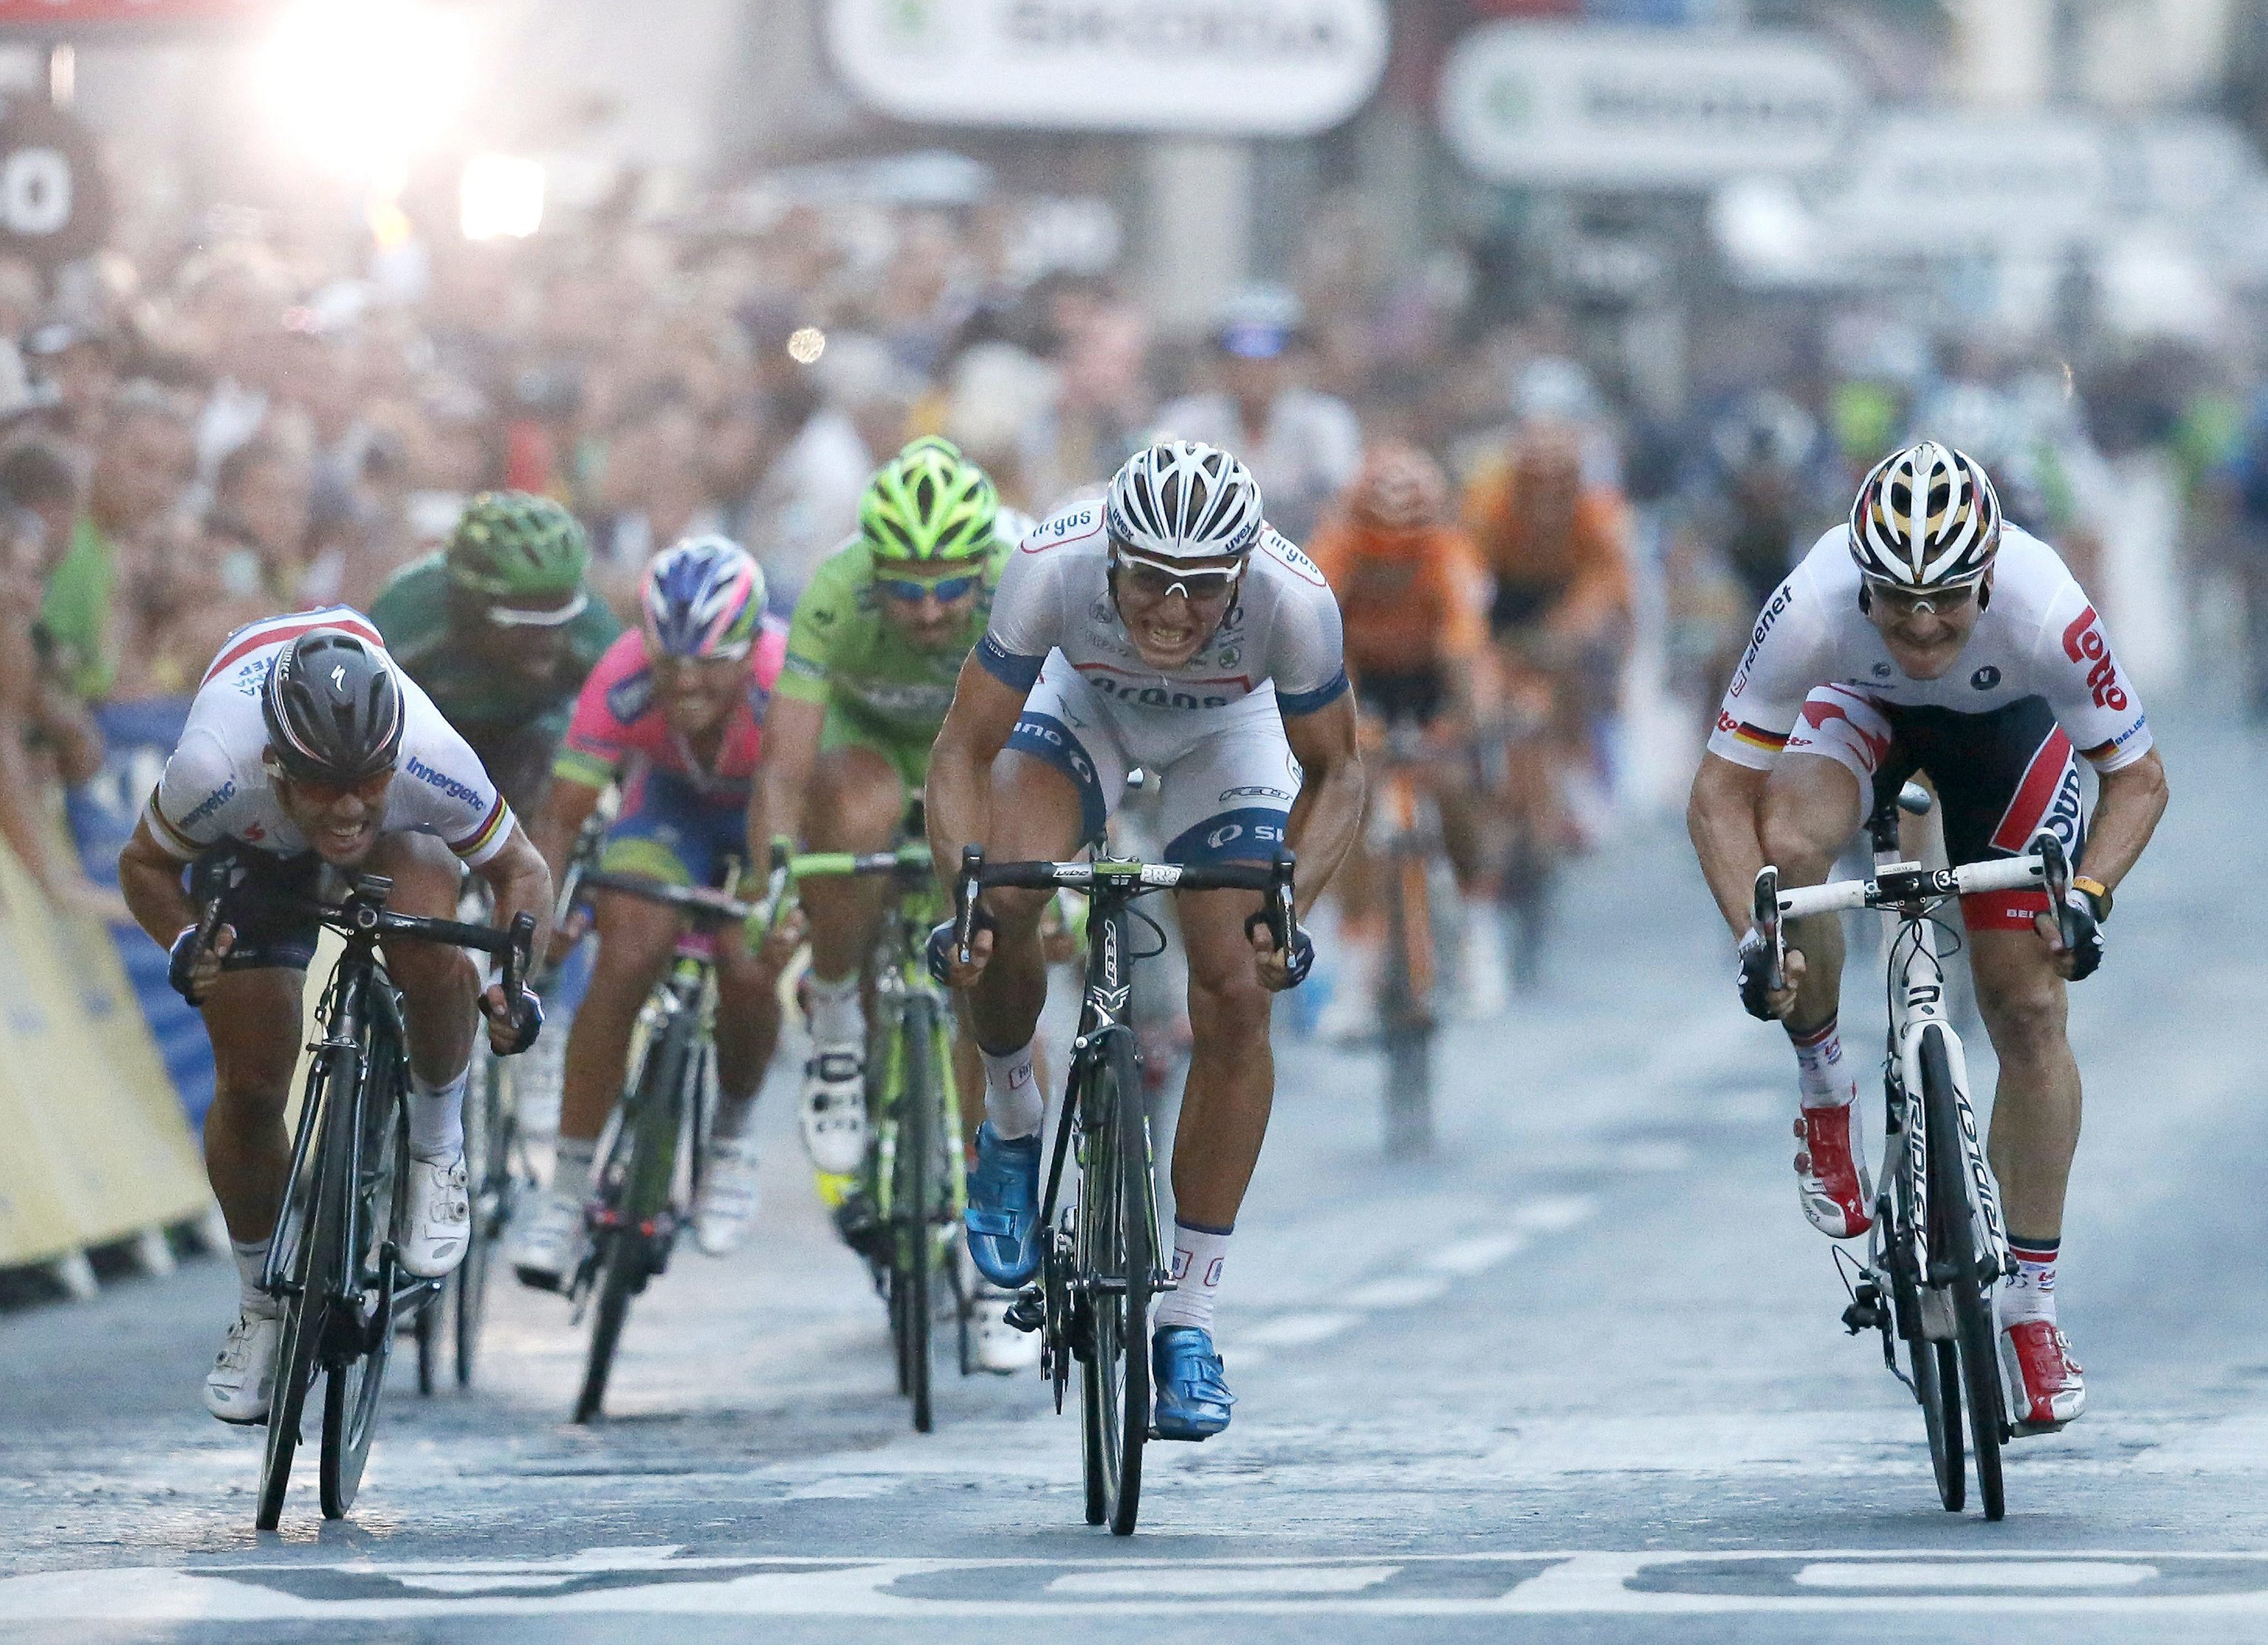 Ciclistas durante el Tour de Francia, en una imagen de archivo.